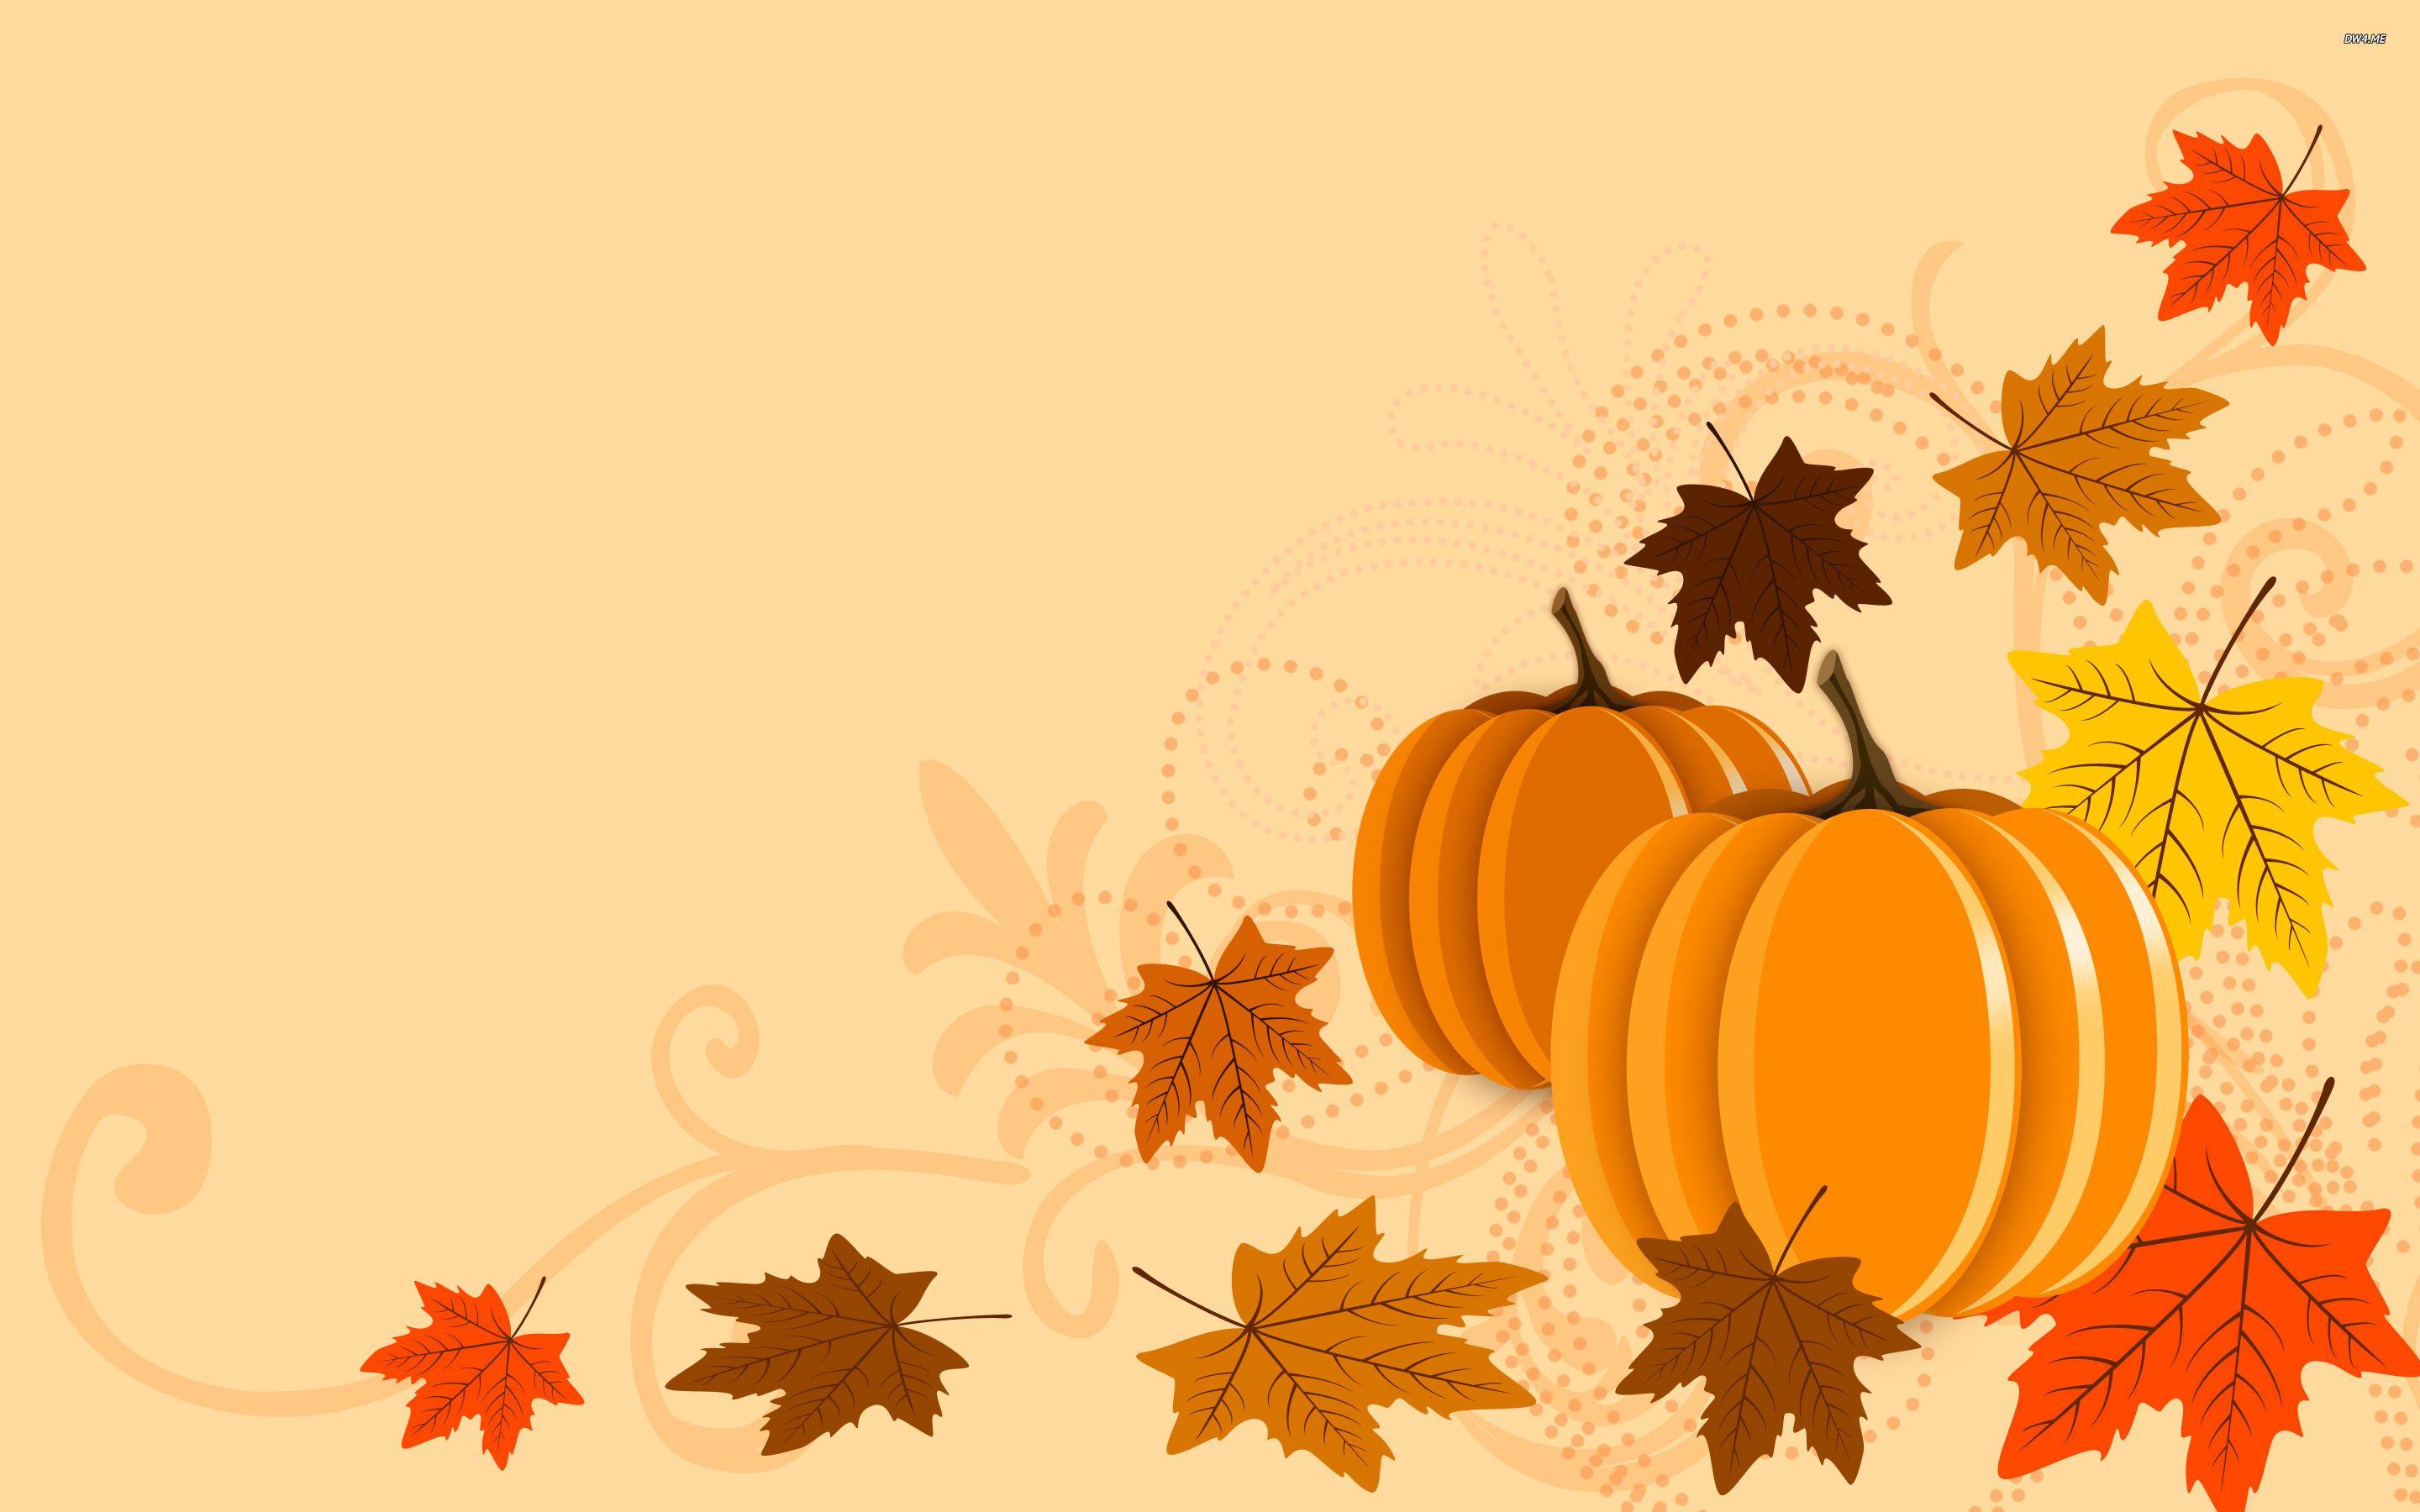 Fall Pumpkin Desktop Background. Fall Leaves with Pumpkins